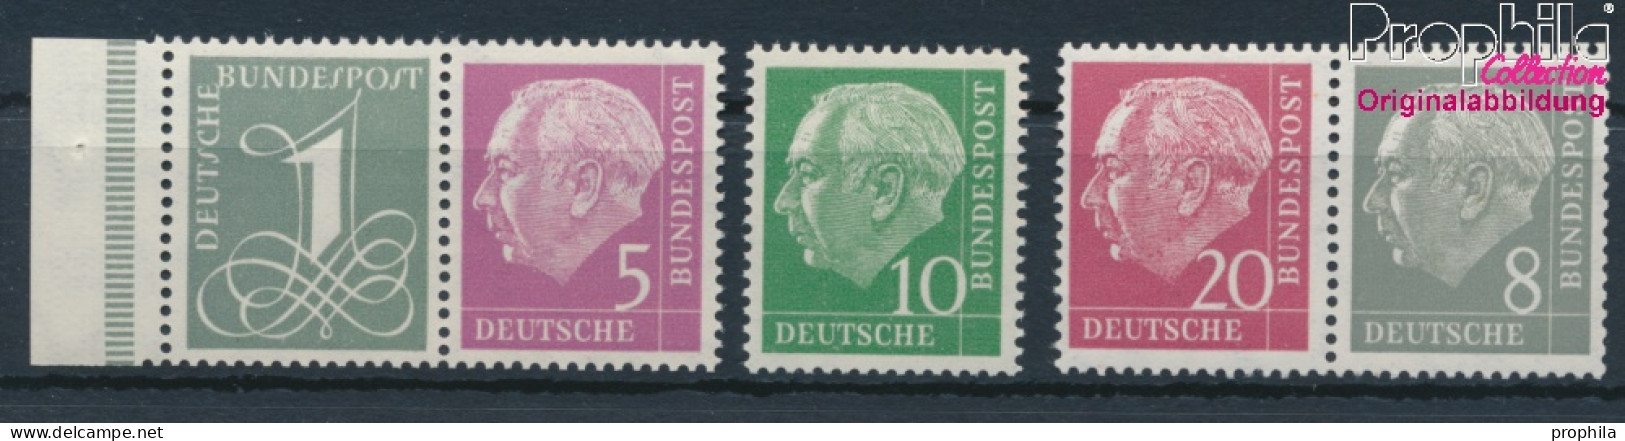 BRD 179Y,182Y,183Y,185Y,285Y (kompl.Ausg.) Liegendes Wasserzeichen Postfrisch 1960 Heuss I (10347826 - Nuovi